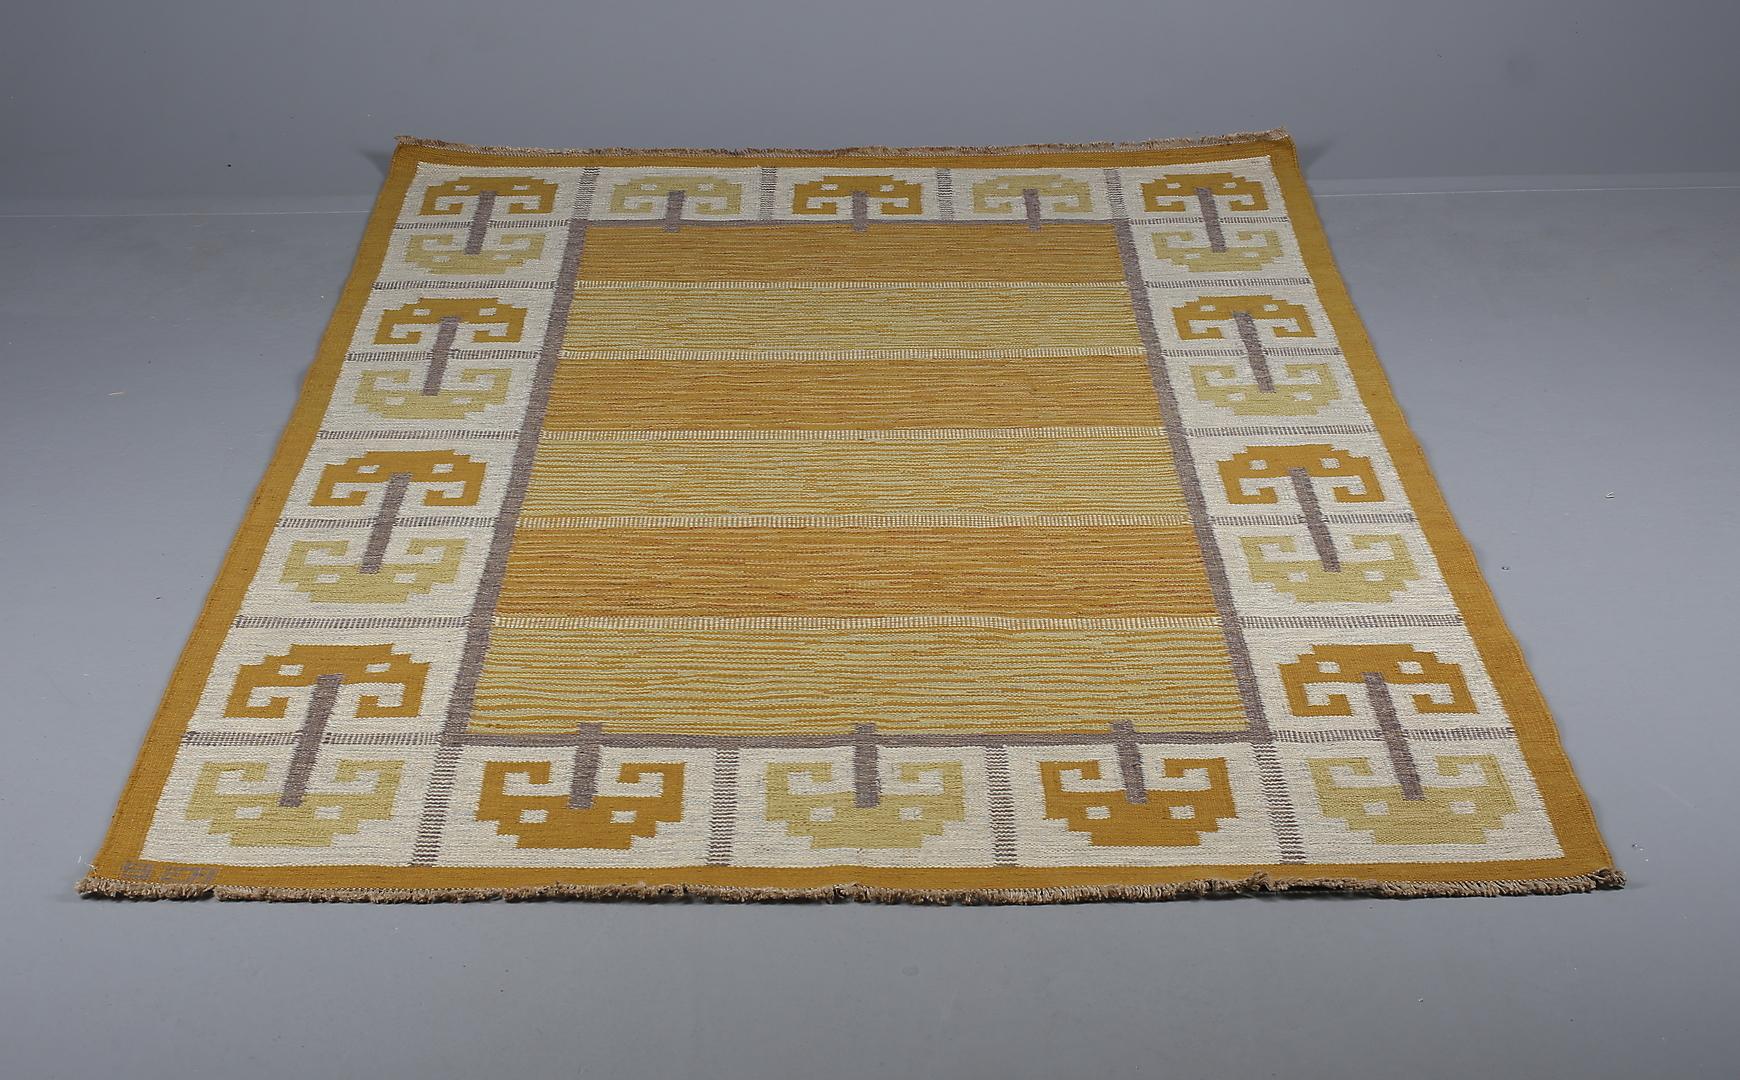 Schwedische flachgewebte Schurwolle  Teppich entworfen von Anna-Greta Sjökvist für Svenskt Tenn. Schweden, 1950er Jahre.
Dieser außergewöhnliche Teppich von Kilin Technique zeichnet sich durch ein geometrisches Muster aus krabbenähnlichen Formen